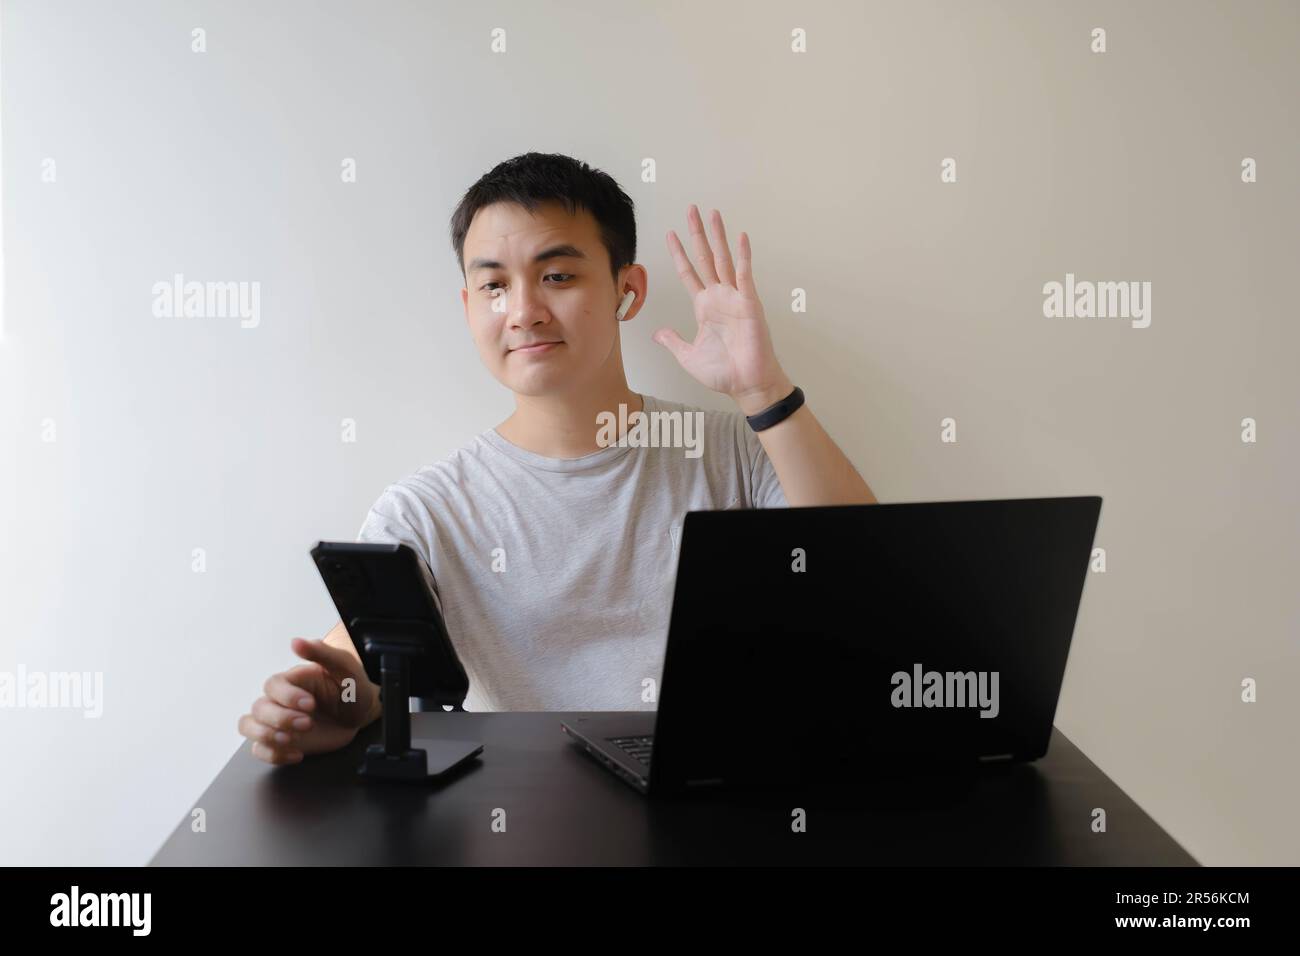 Ein junger asiatischer Mann, der ein graues T-Shirt und ein Paar schnurlose Kopfhörer trägt, winkt mit der Hand bei einem Online-Meeting auf einem Laptop Leuten zu Stockfoto